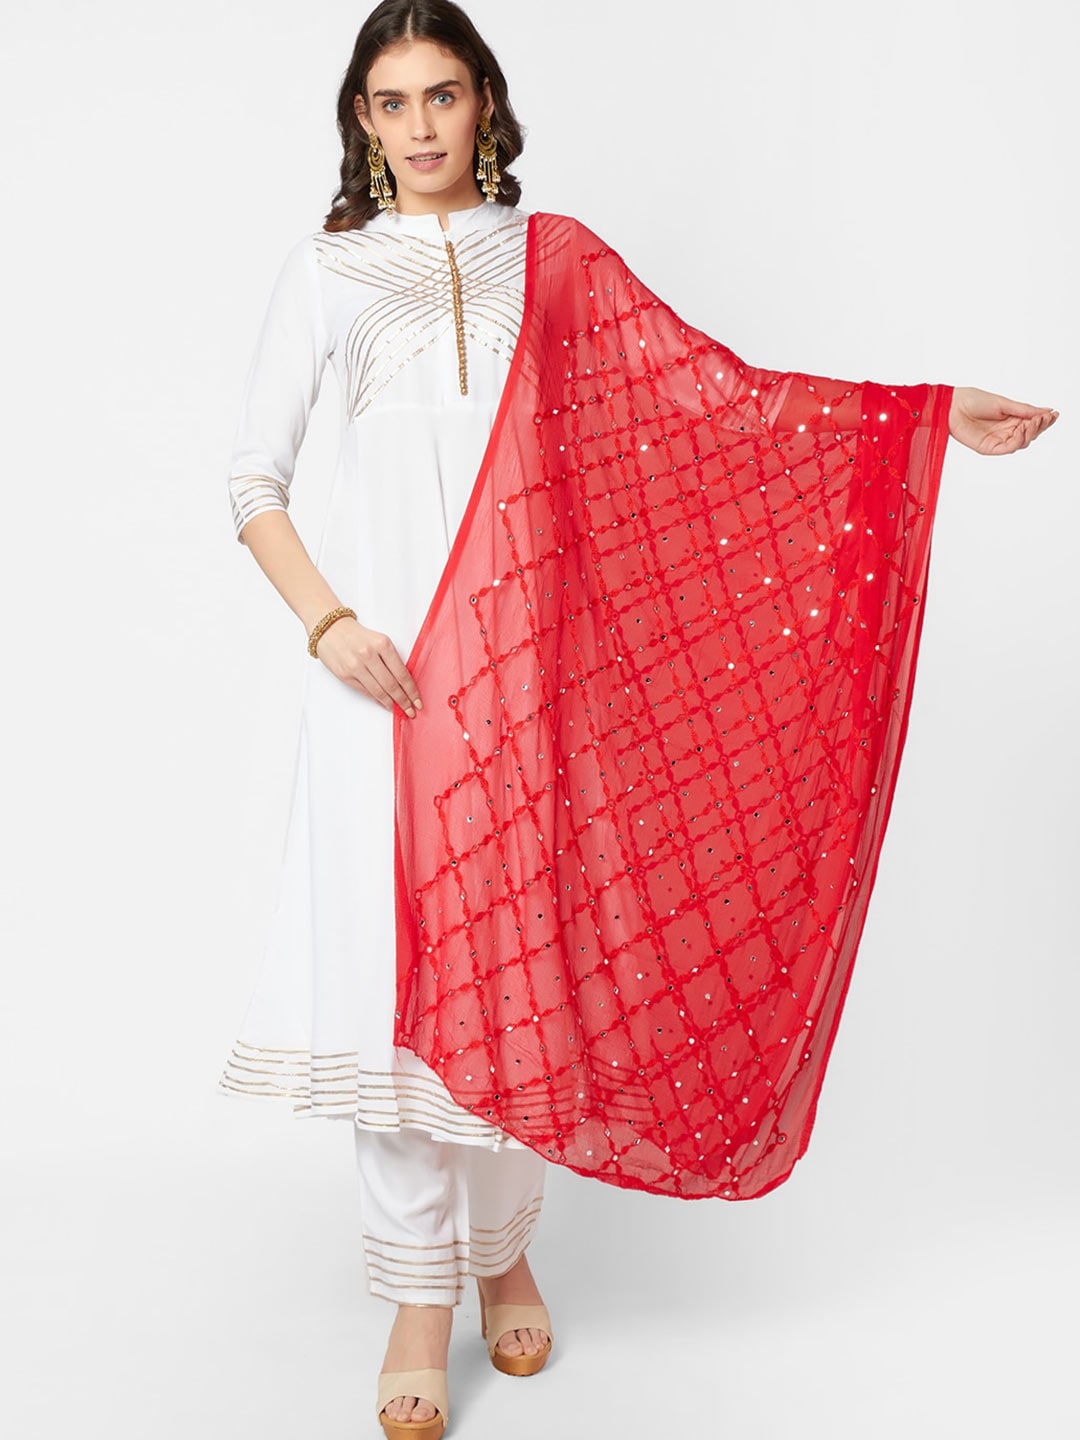 Dupatta Bazaar Red & White Ethnic Motifs Embroidered Dupatta with Mirror Work Price in India